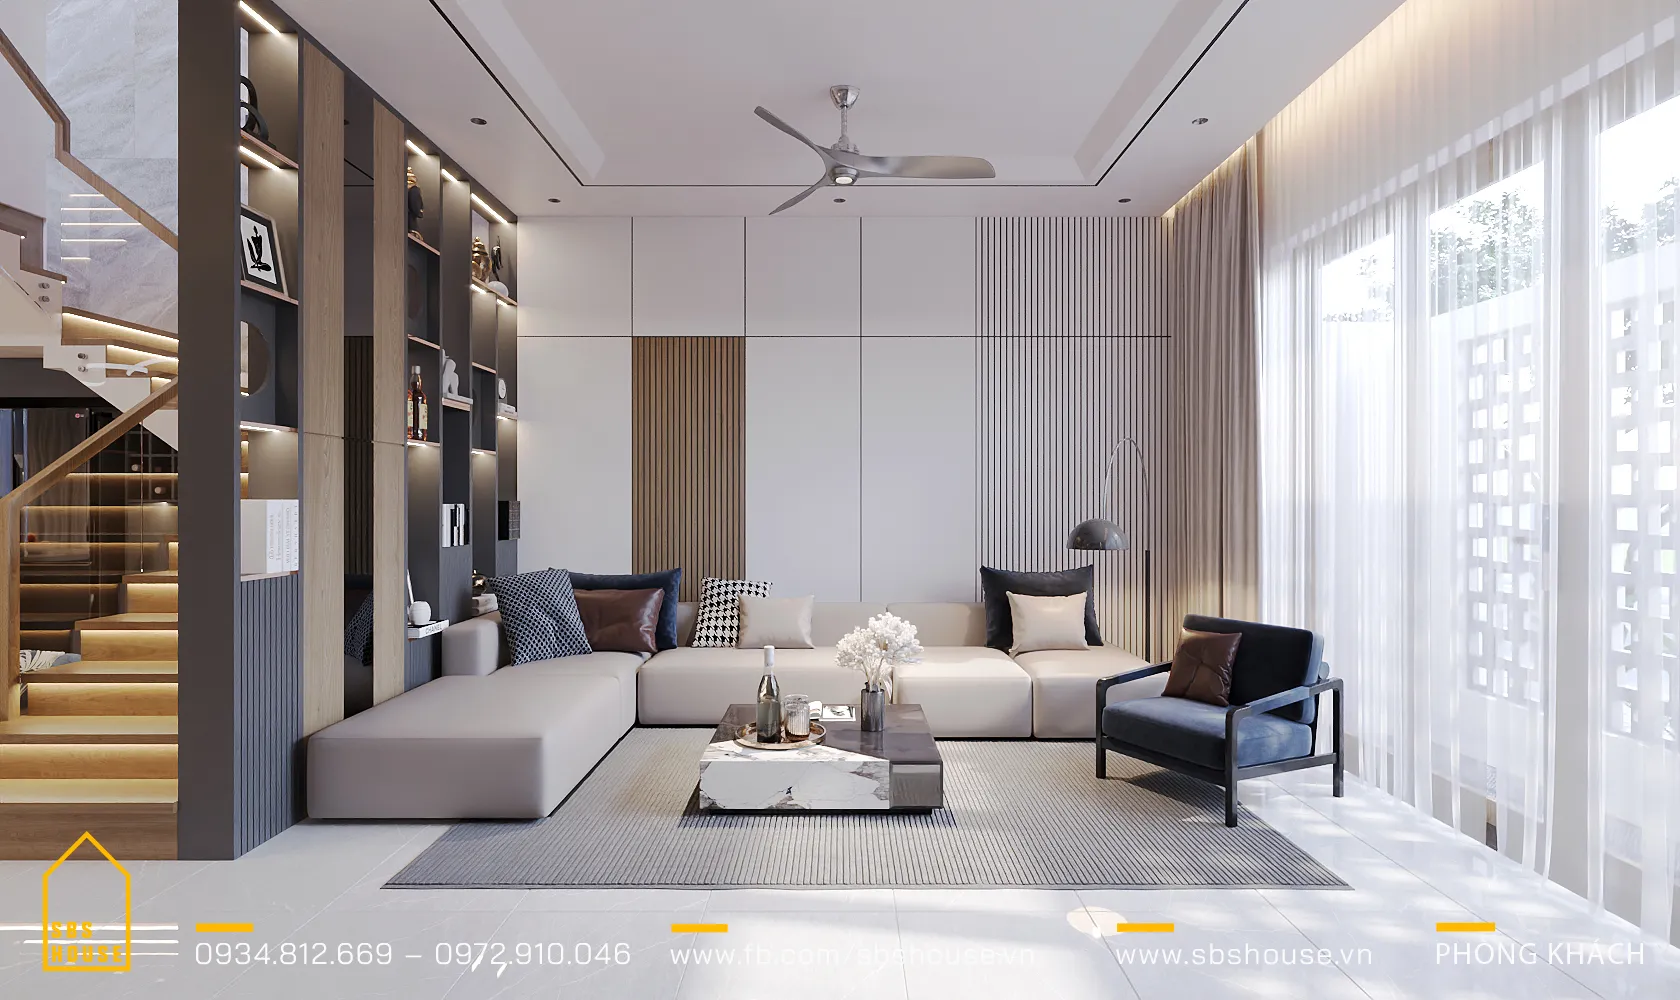 Phòng khách được trang bị đồ nội thất hiện đại, vừa thể hiện gu thẩm mỹ tinh tế, vừa đảm bảo tính năng thoải mái và tiện nghi. 